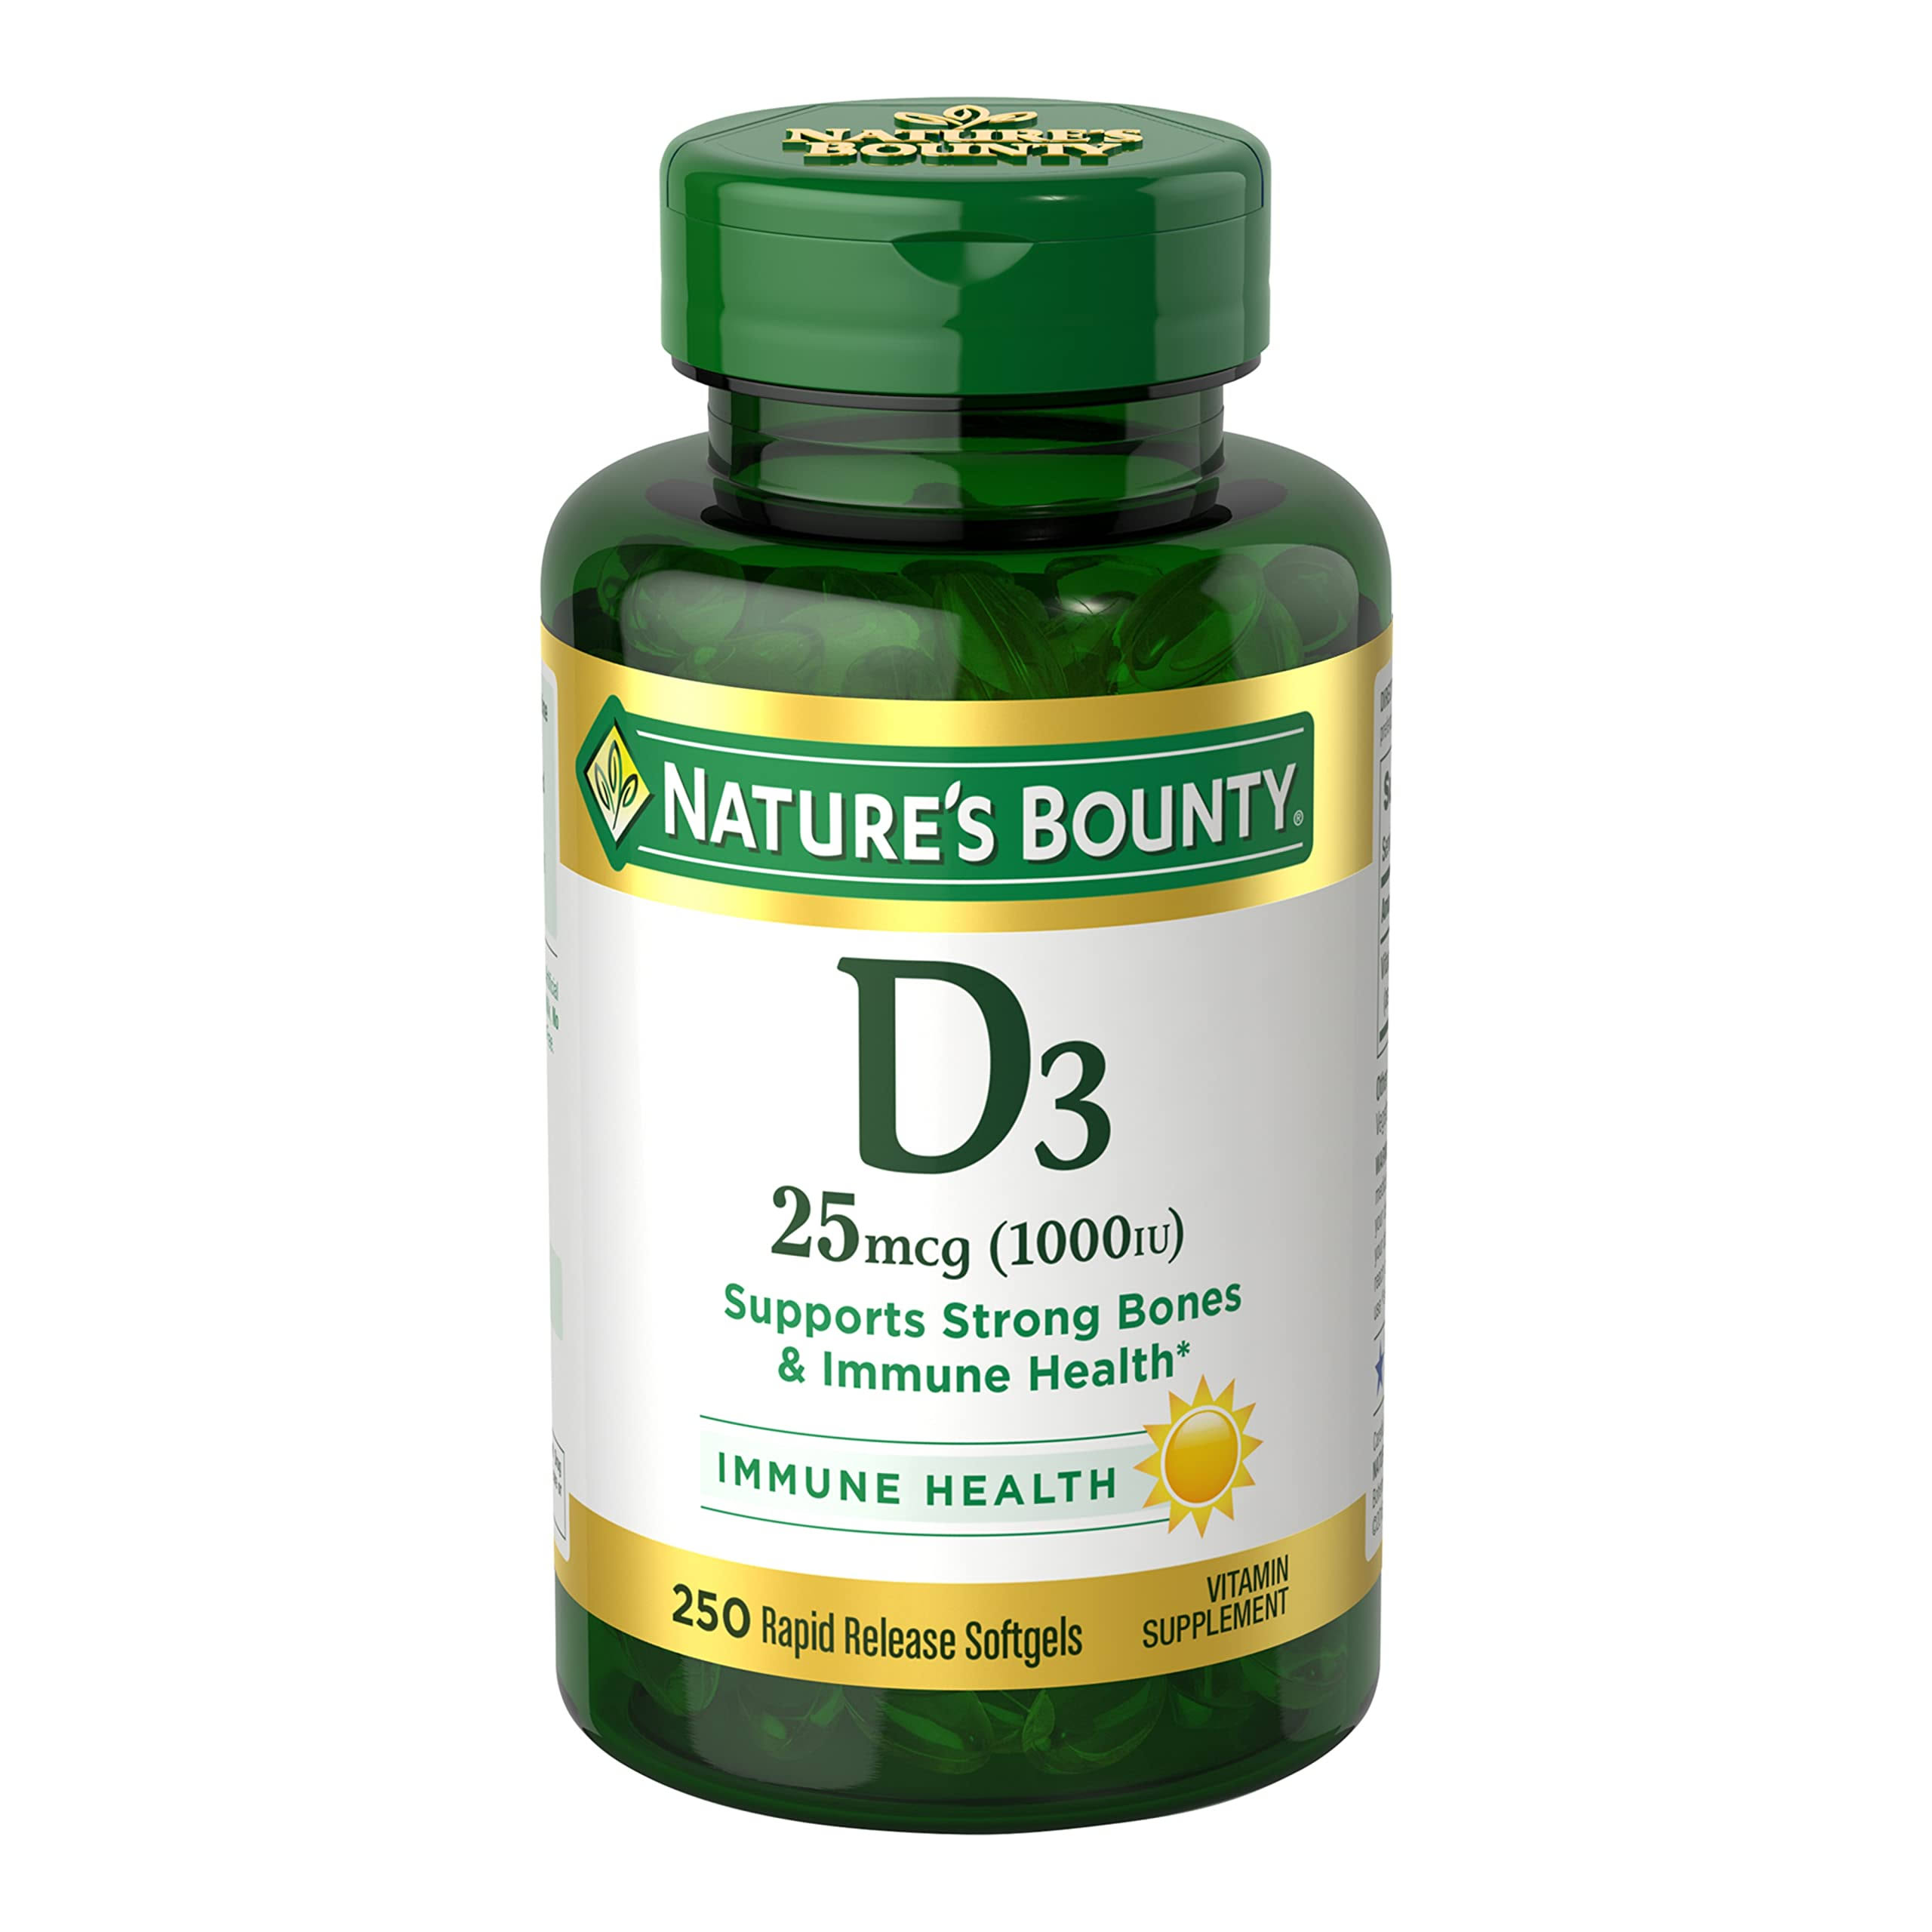 Nature's Bounty Vitamin D3 1000 IU - 250 Softgels